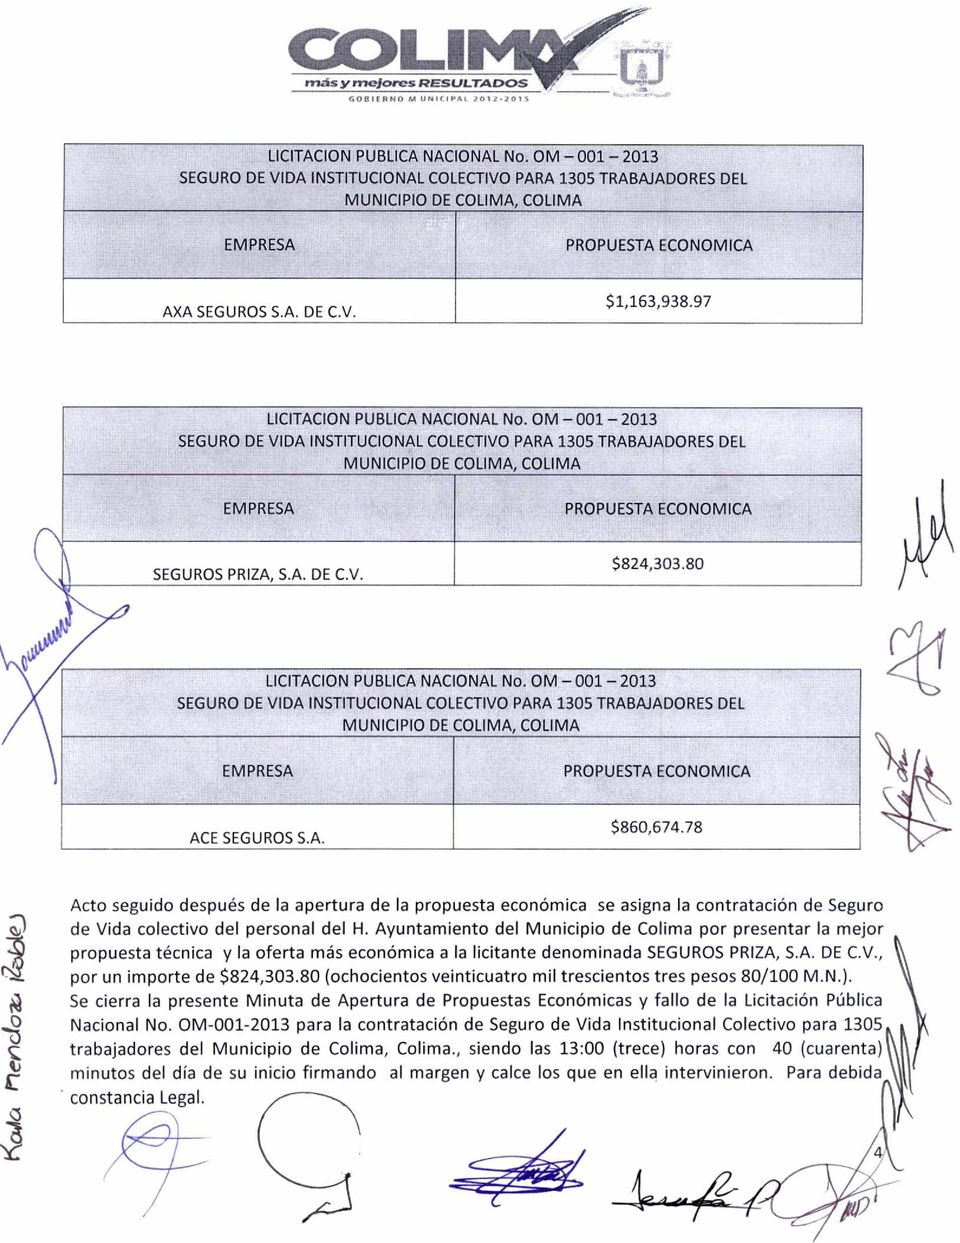 Ayuntamiento del Municipio de Colima por presentar la mejor propuesta técnica y la oferta más económica a la licitante denominada SEGUROS PRIZA, S.A. DE C.V., por un importe de $824,303.